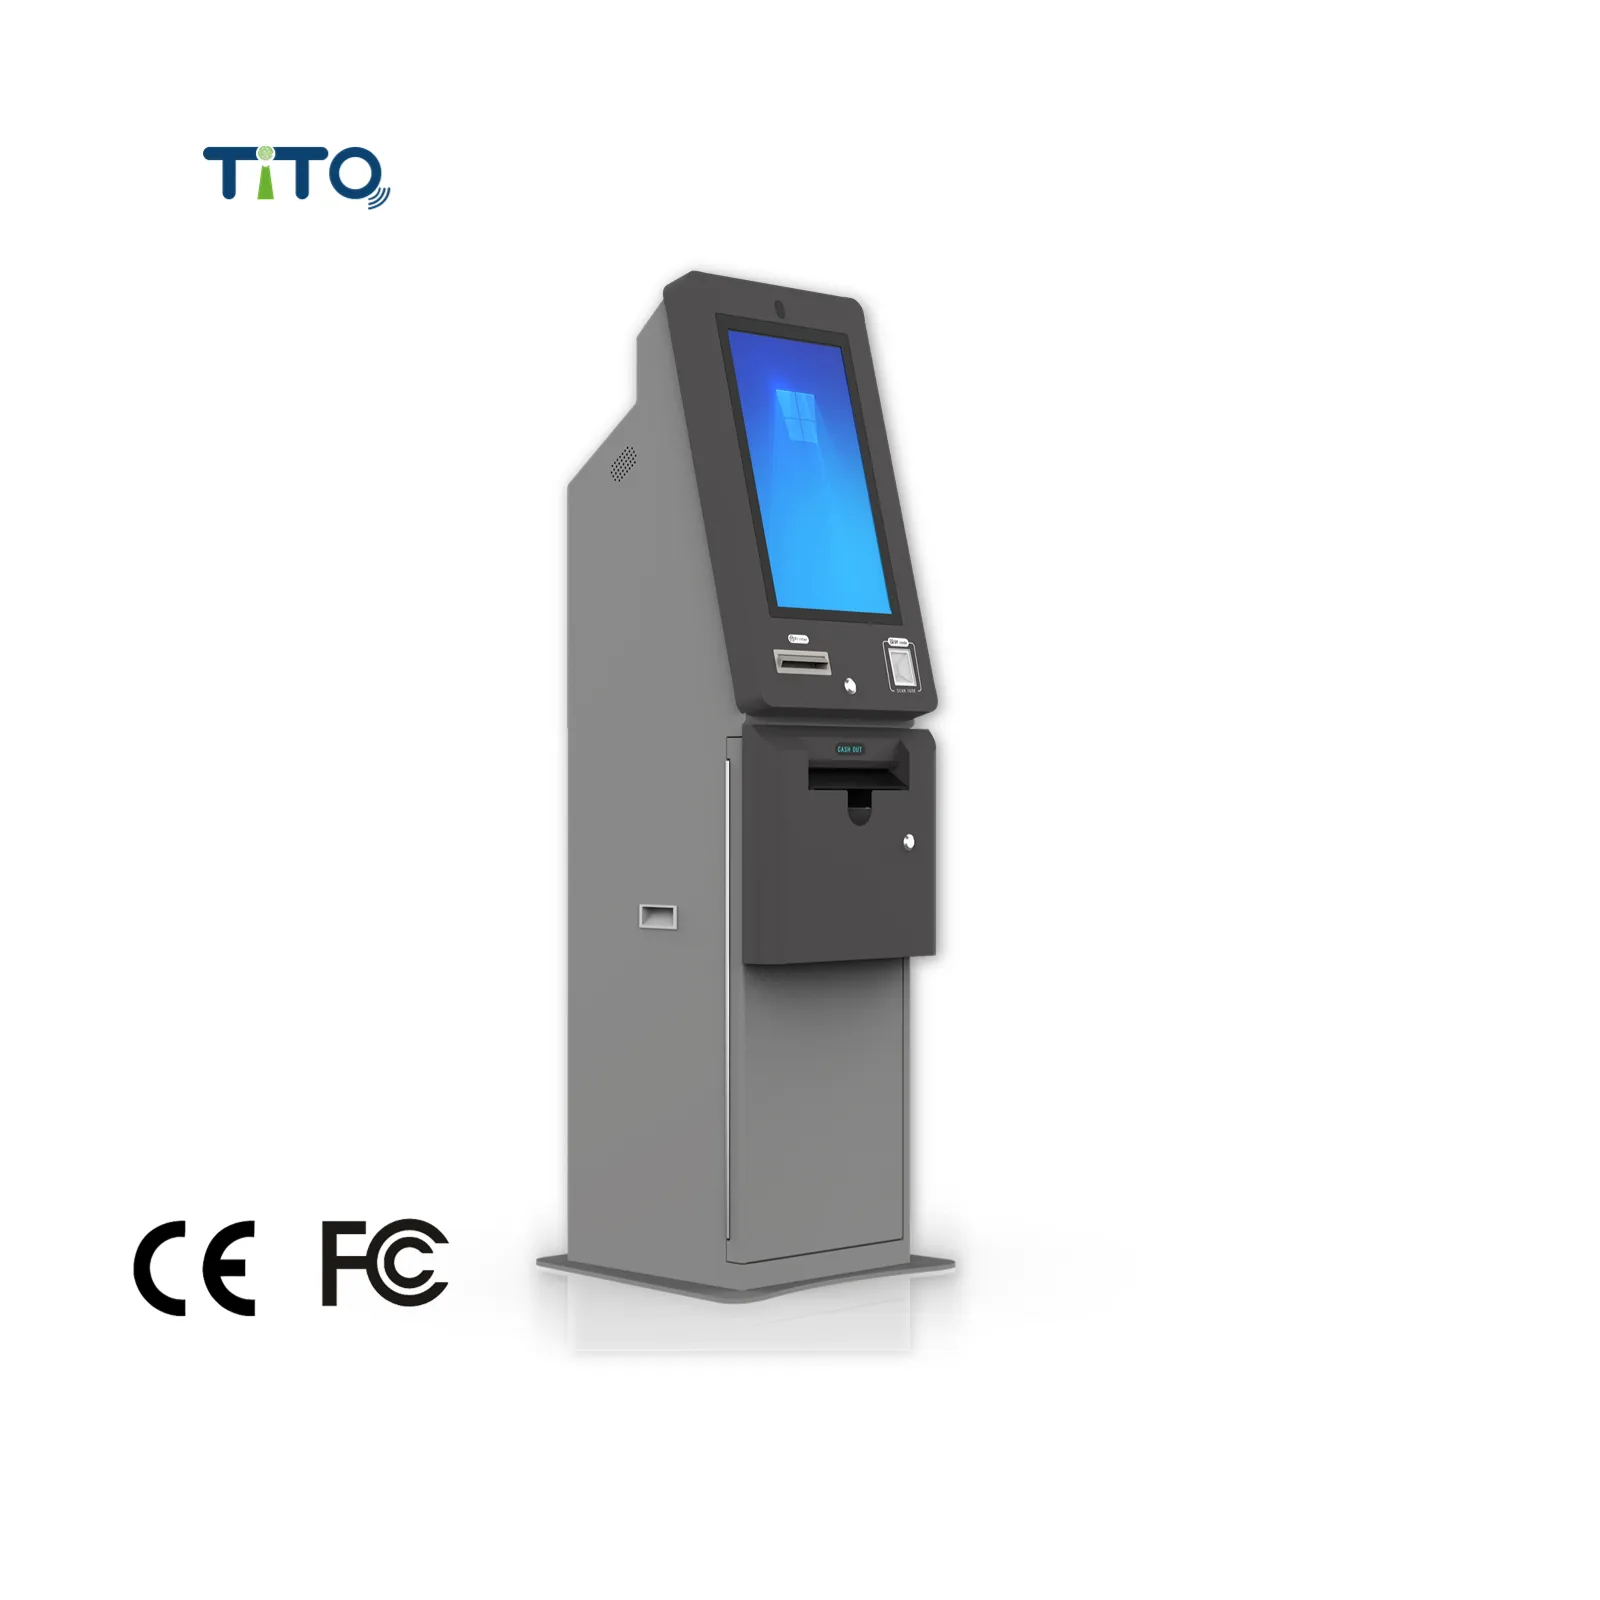 ตู้อิเล็กทรอนิกส์แบบบริการตนเองพร้อมเครื่องพิมพ์ตั๋ว เครื่องบริการตนเอง เครื่อง ATM สําหรับสถานีลอตเตอรีคาสิโน